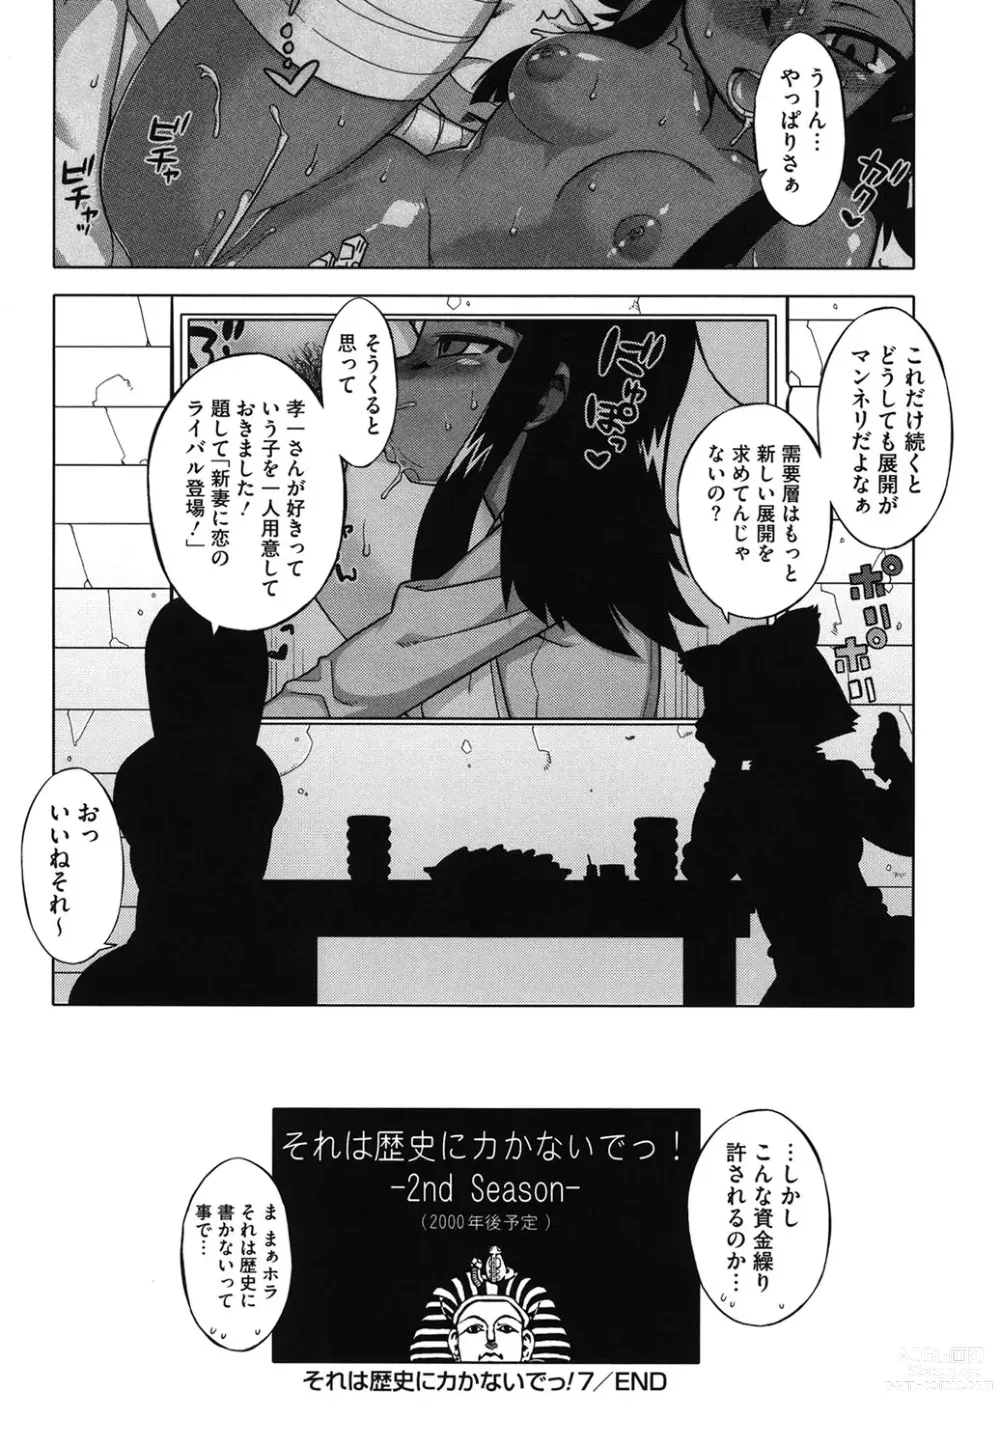 Page 195 of manga Sore wa Rekishi ni Kakanaide!